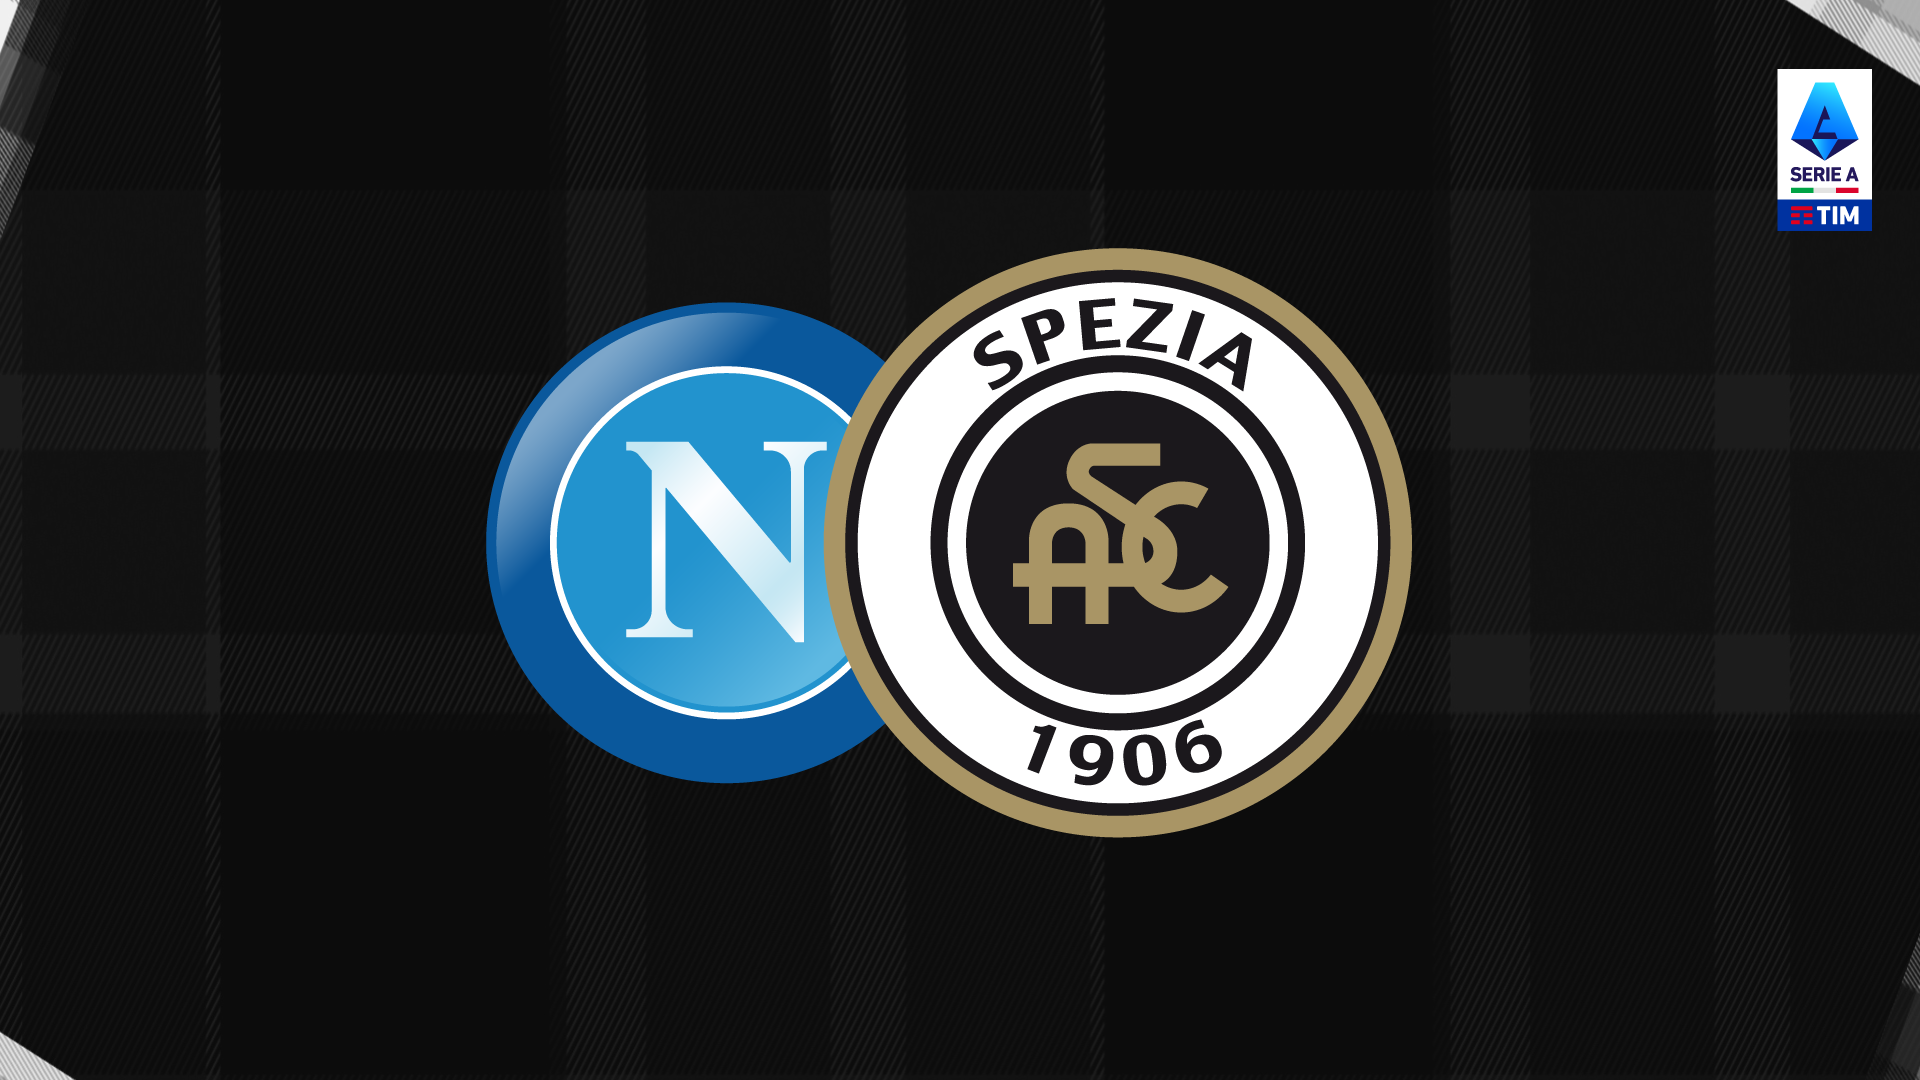 Serie A TIM: Napoli-Spezia 1-0